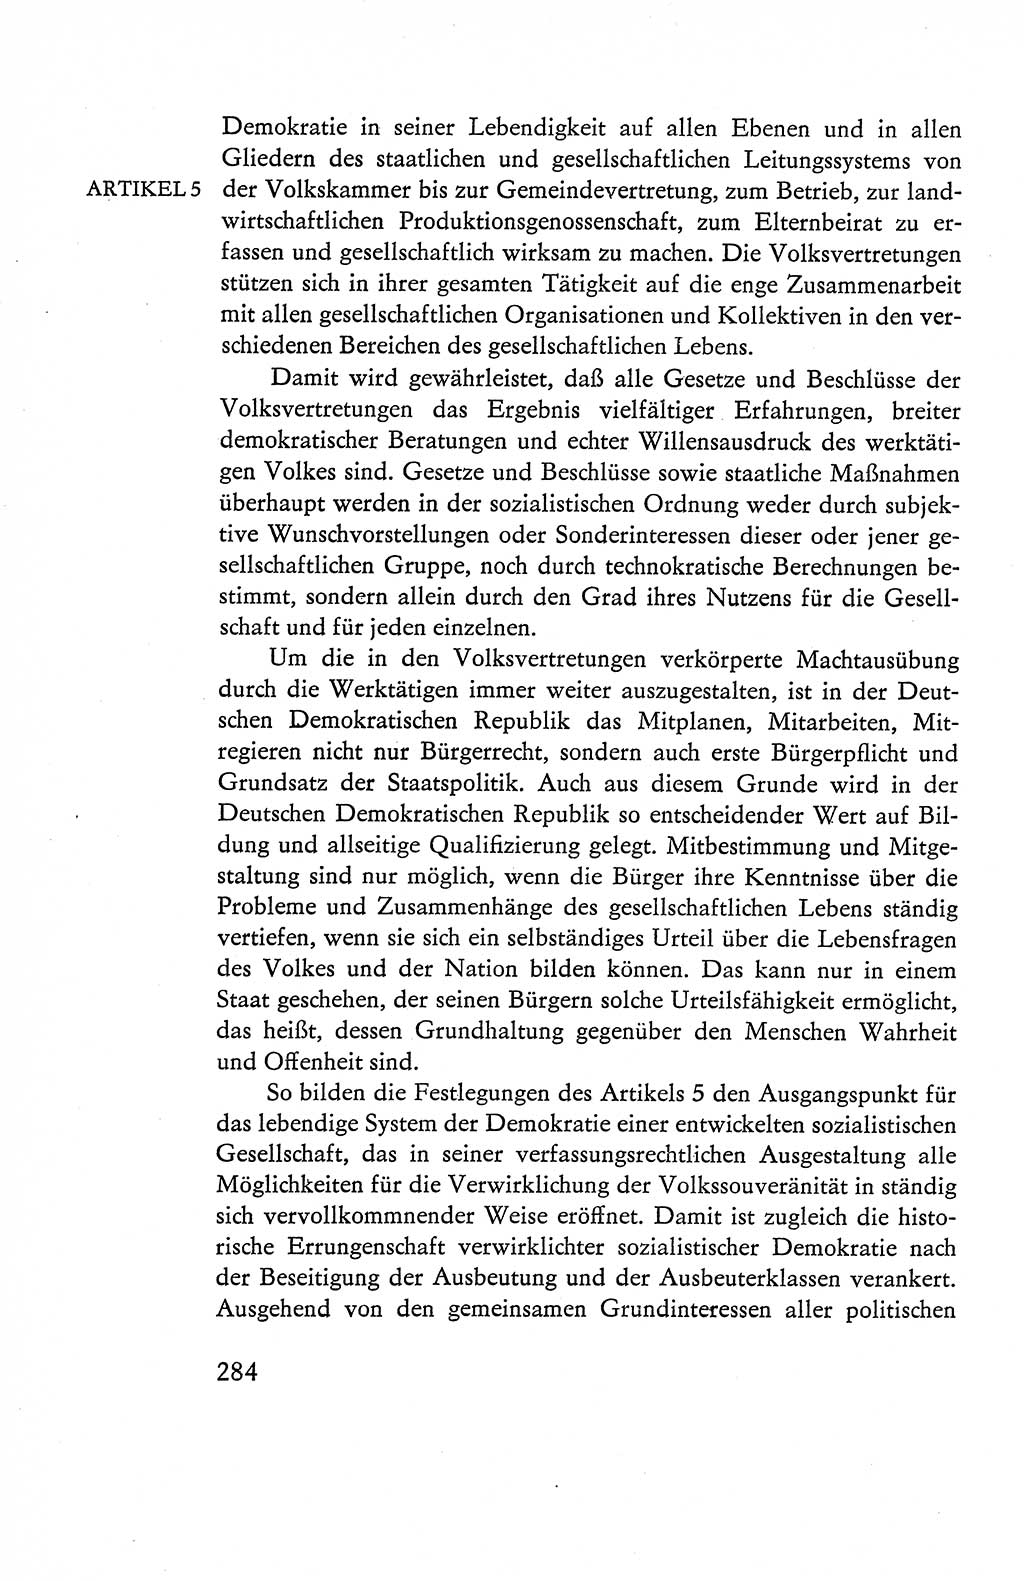 Verfassung der Deutschen Demokratischen Republik (DDR), Dokumente, Kommentar 1969, Band 1, Seite 284 (Verf. DDR Dok. Komm. 1969, Bd. 1, S. 284)